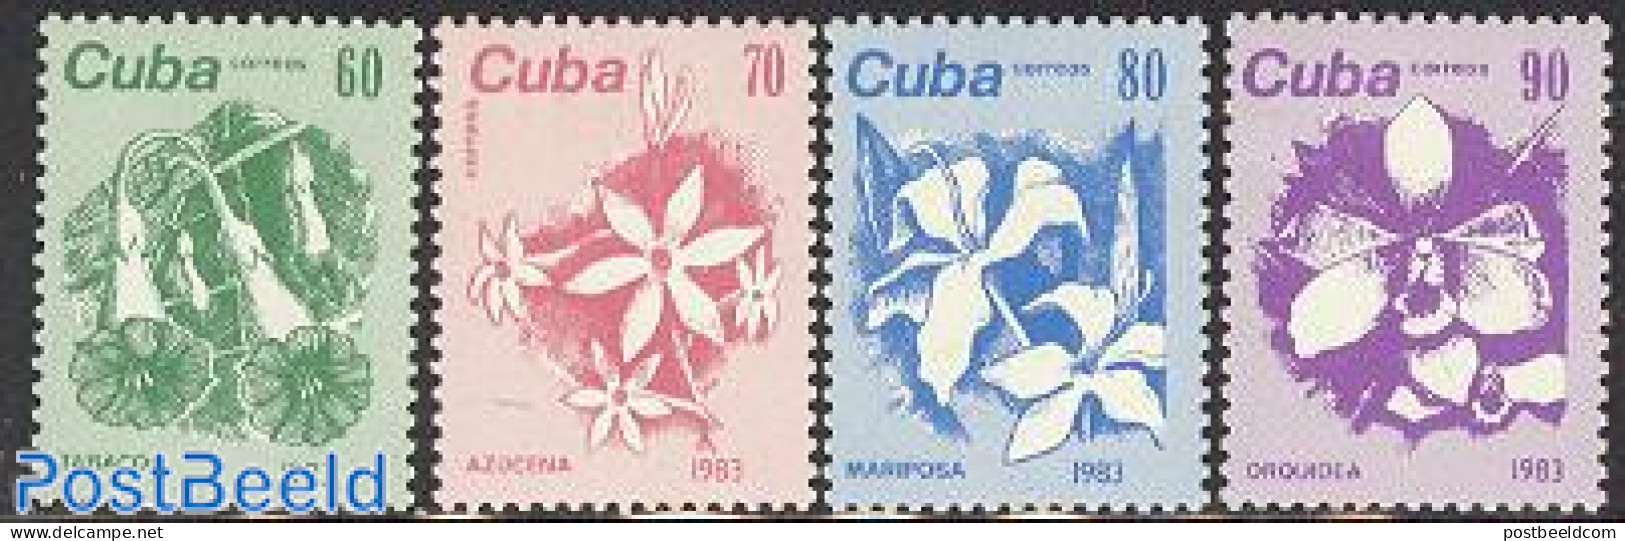 Cuba 1983 Flowers 4v, Mint NH, Nature - Flowers & Plants - Orchids - Ungebraucht